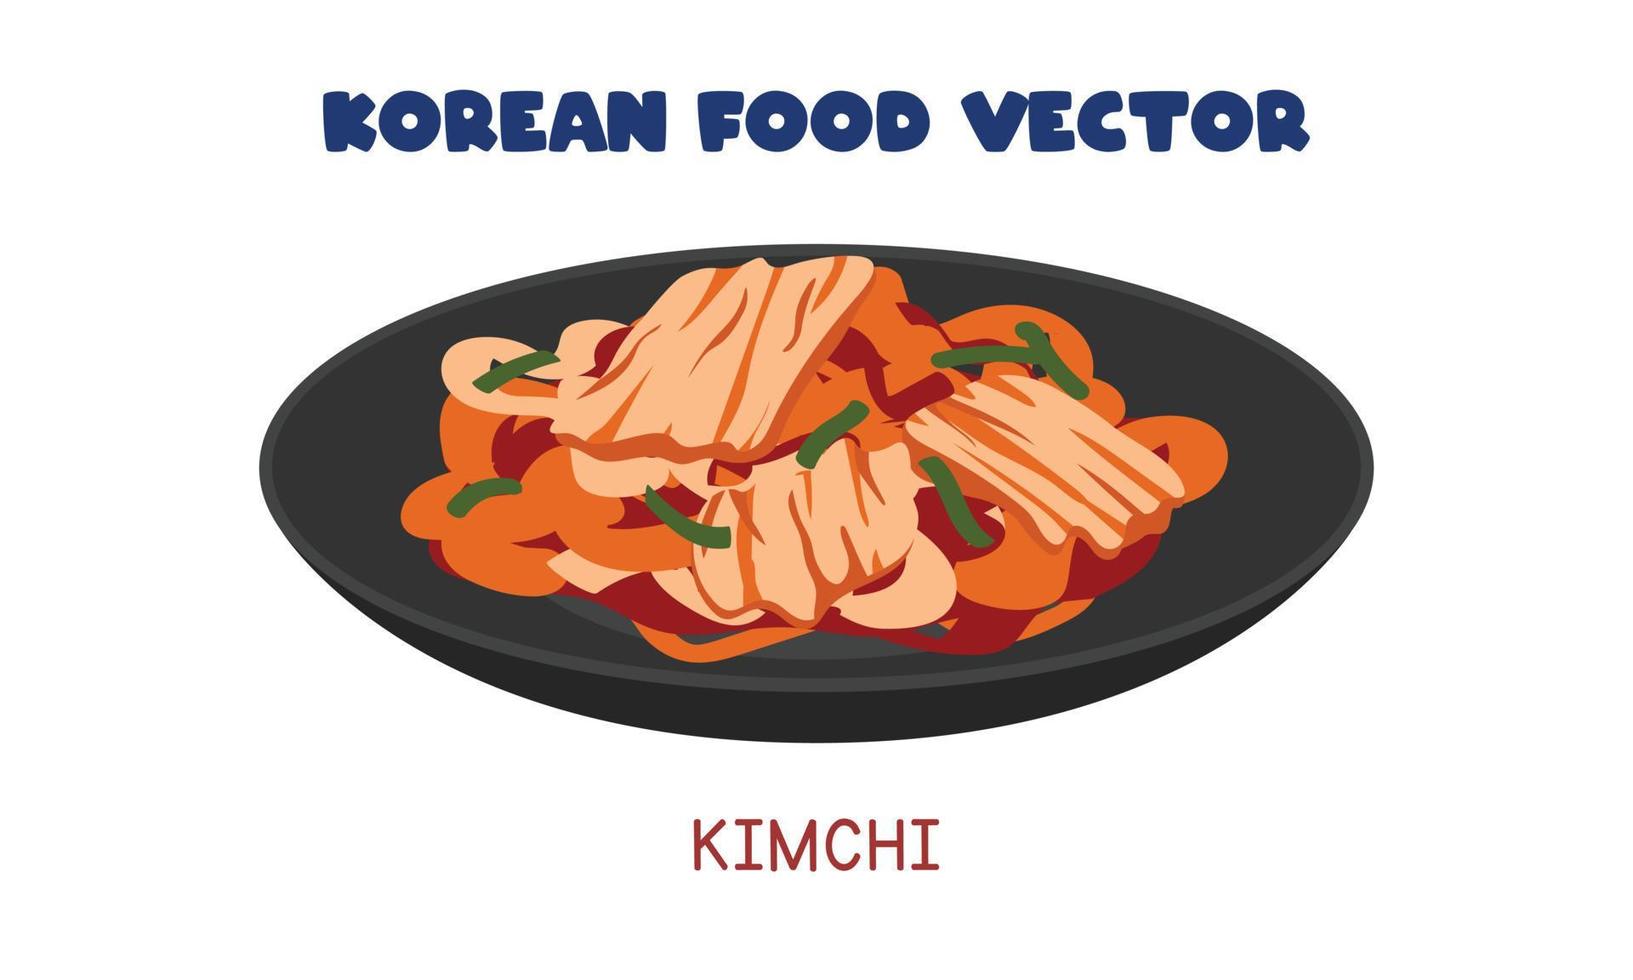 kimchi coreano - ilustración de diseño de vector plano vegetal de repollo en escabeche picante, estilo de dibujos animados de imágenes prediseñadas. comida asiática. Cocina coreana. comida coreana